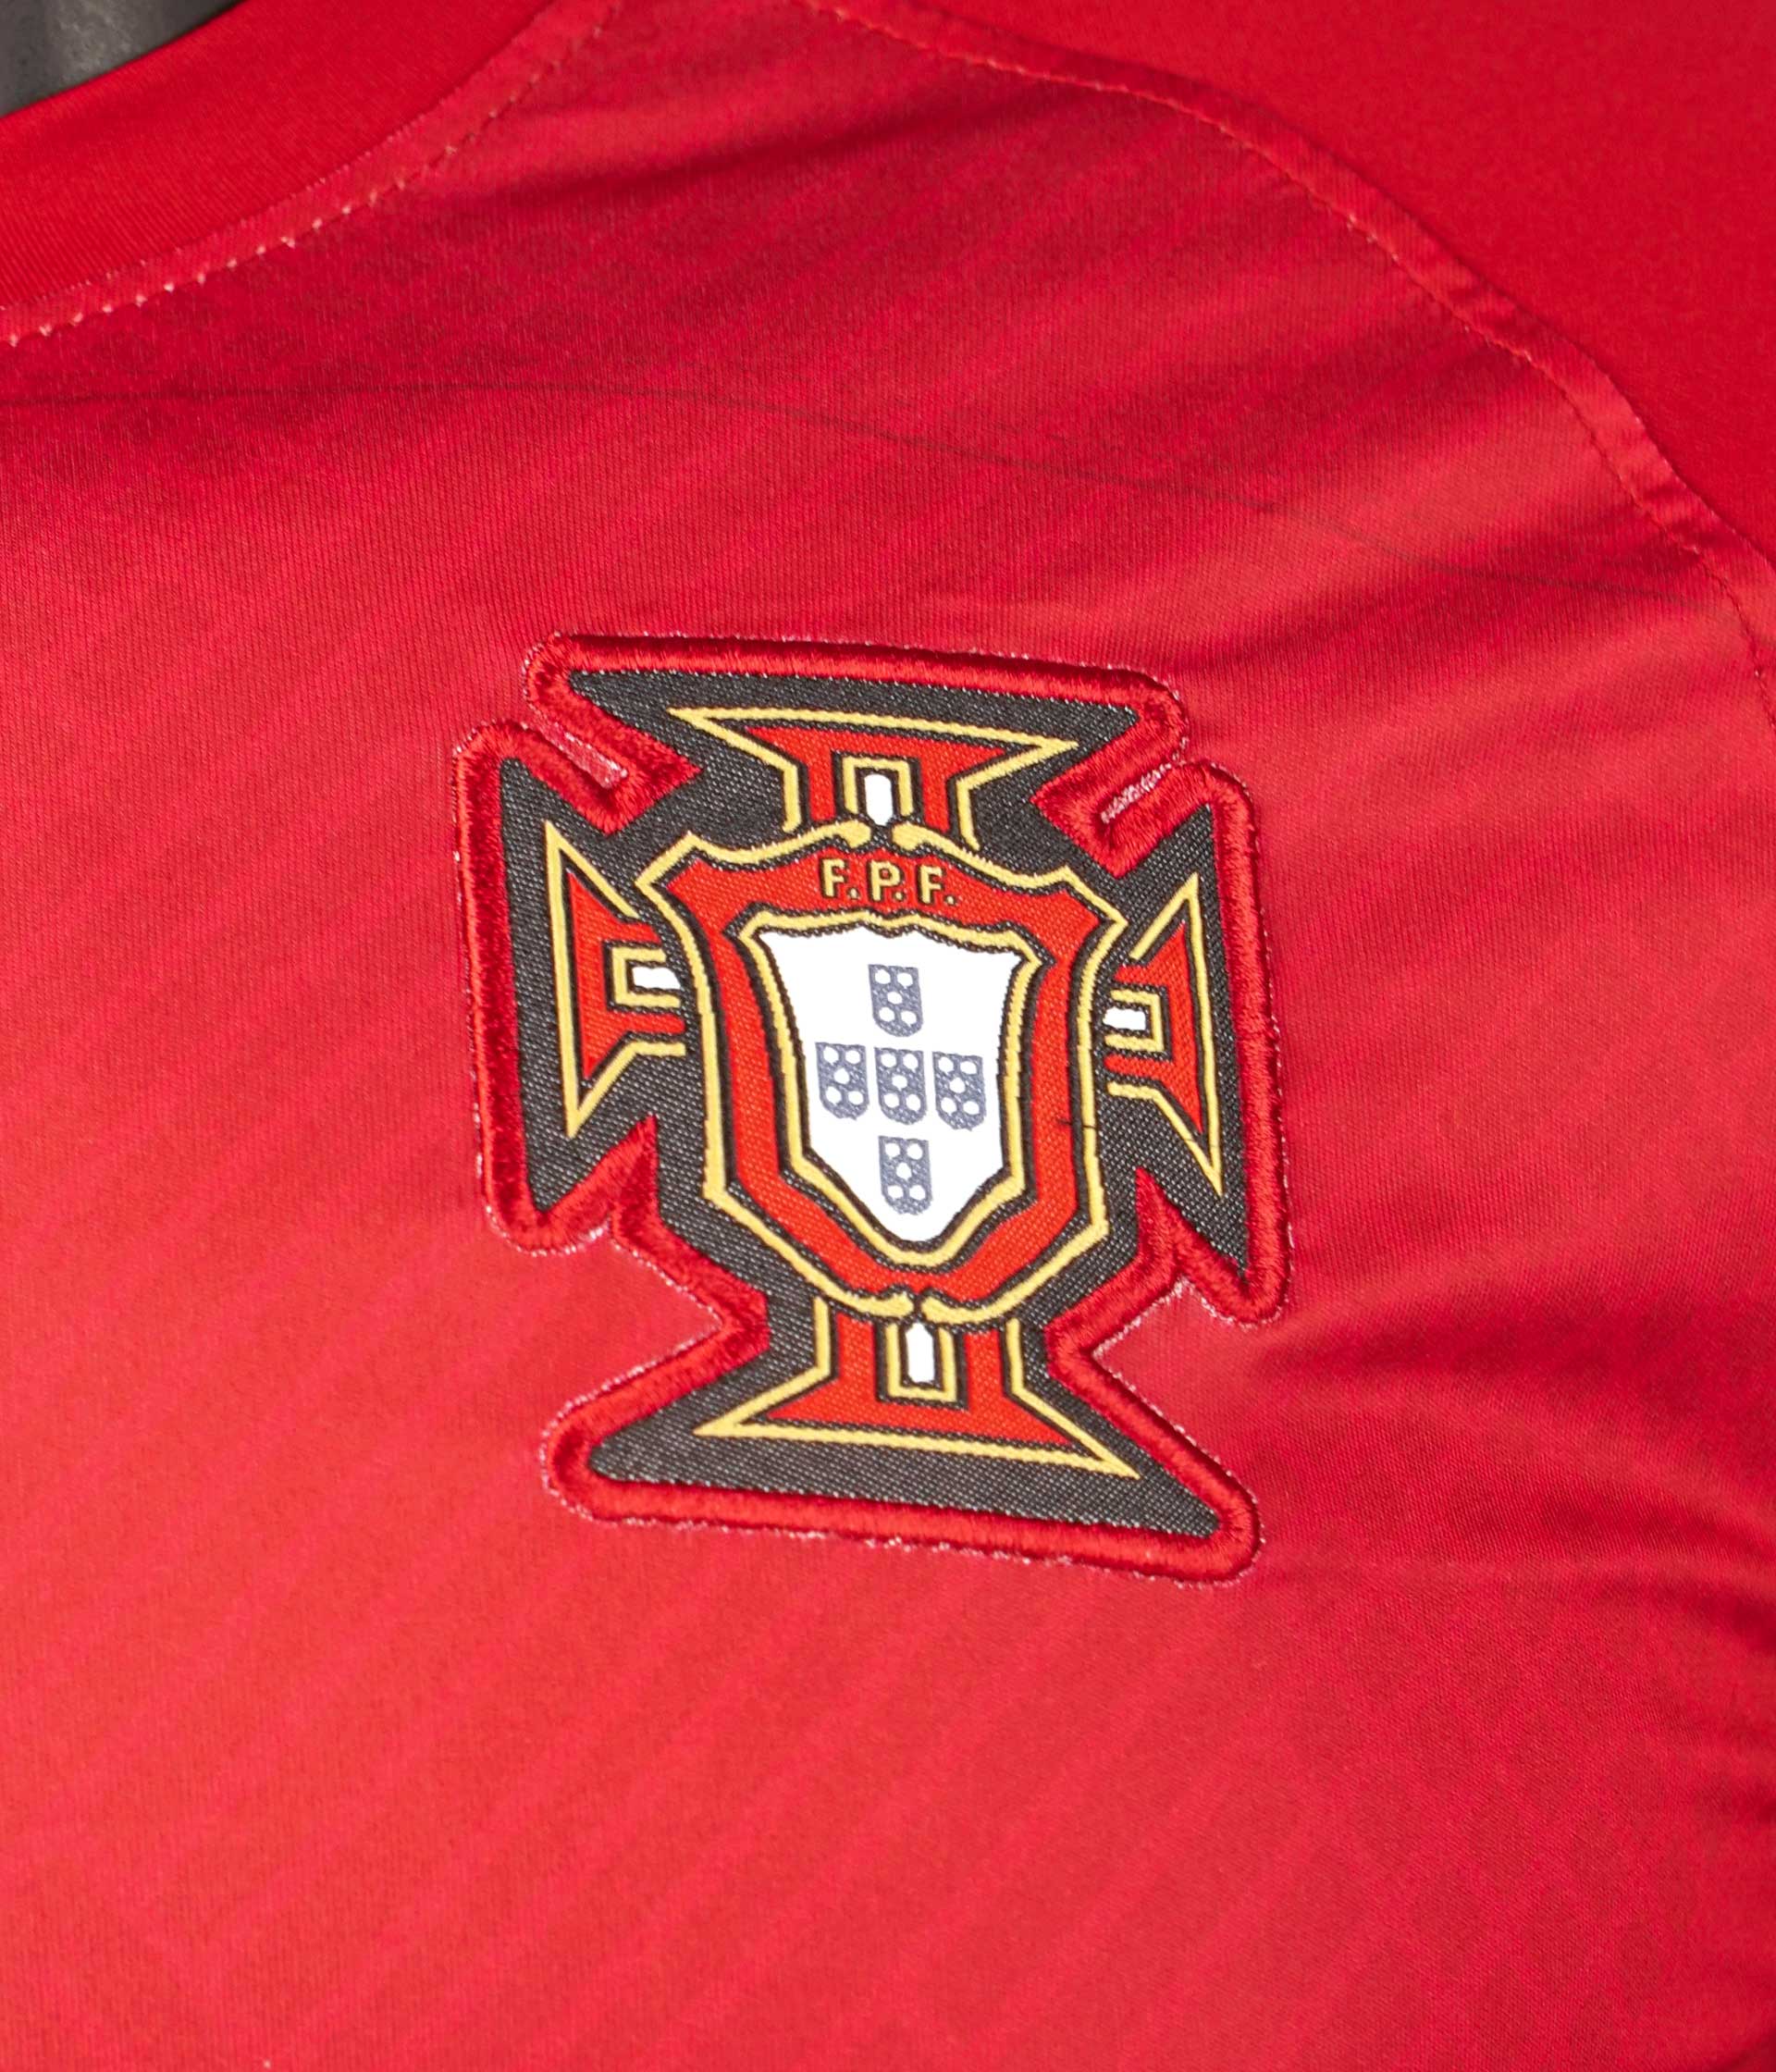 Vẽ cờ Bồ Đào Nha 2024 sẽ là một trải nghiệm tuyệt vời cho người yêu thích nghệ thuật và sự kiện thể thao. Đến năm 2024, Bồ Đào Nha sẽ tổ chức sự kiện thể thao quốc tế lớn nhất - Universiade. Với việc tạo ra các tác phẩm nghệ thuật đặc trưng của Bồ Đào Nha như vẽ cờ, bạn sẽ có cơ hội truyền tải thông điệp văn hóa và thể hiện tình yêu đối với đất nước này. Hãy nhấn vào hình ảnh để khám phá thêm về sự kiện và nghệ thuật của Bồ Đào Nha!